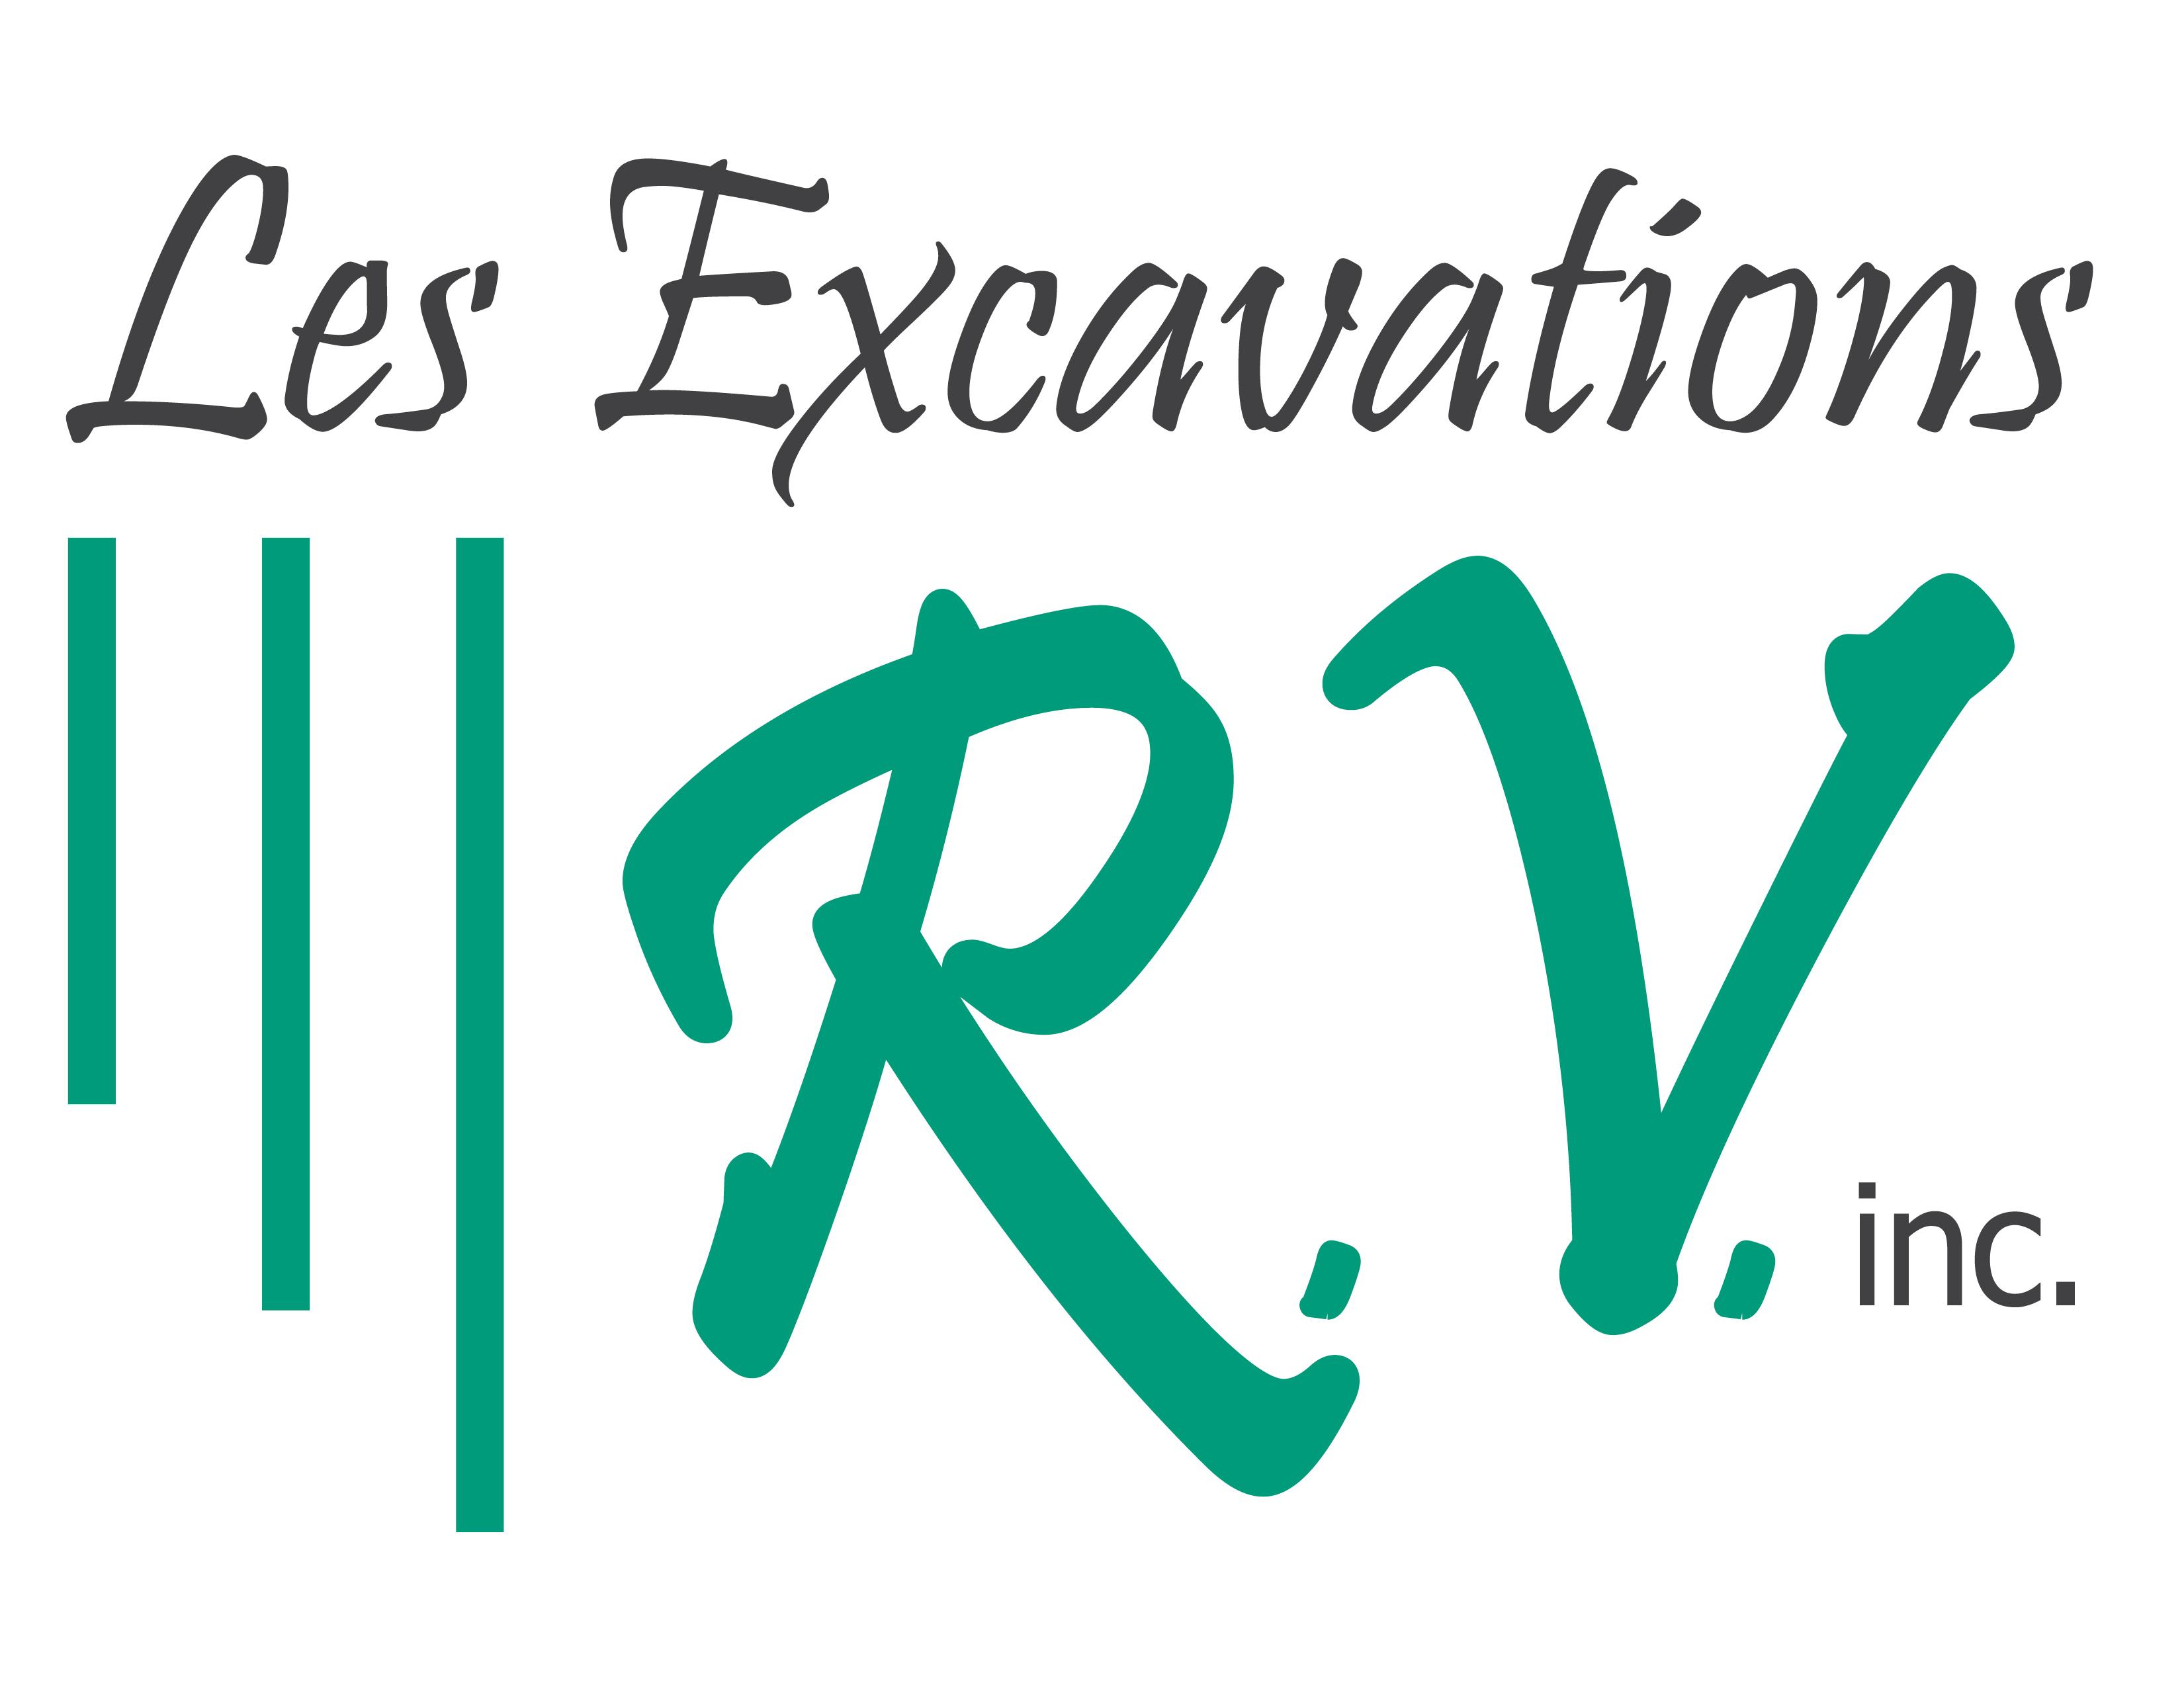 Les excavations R.V. inc.